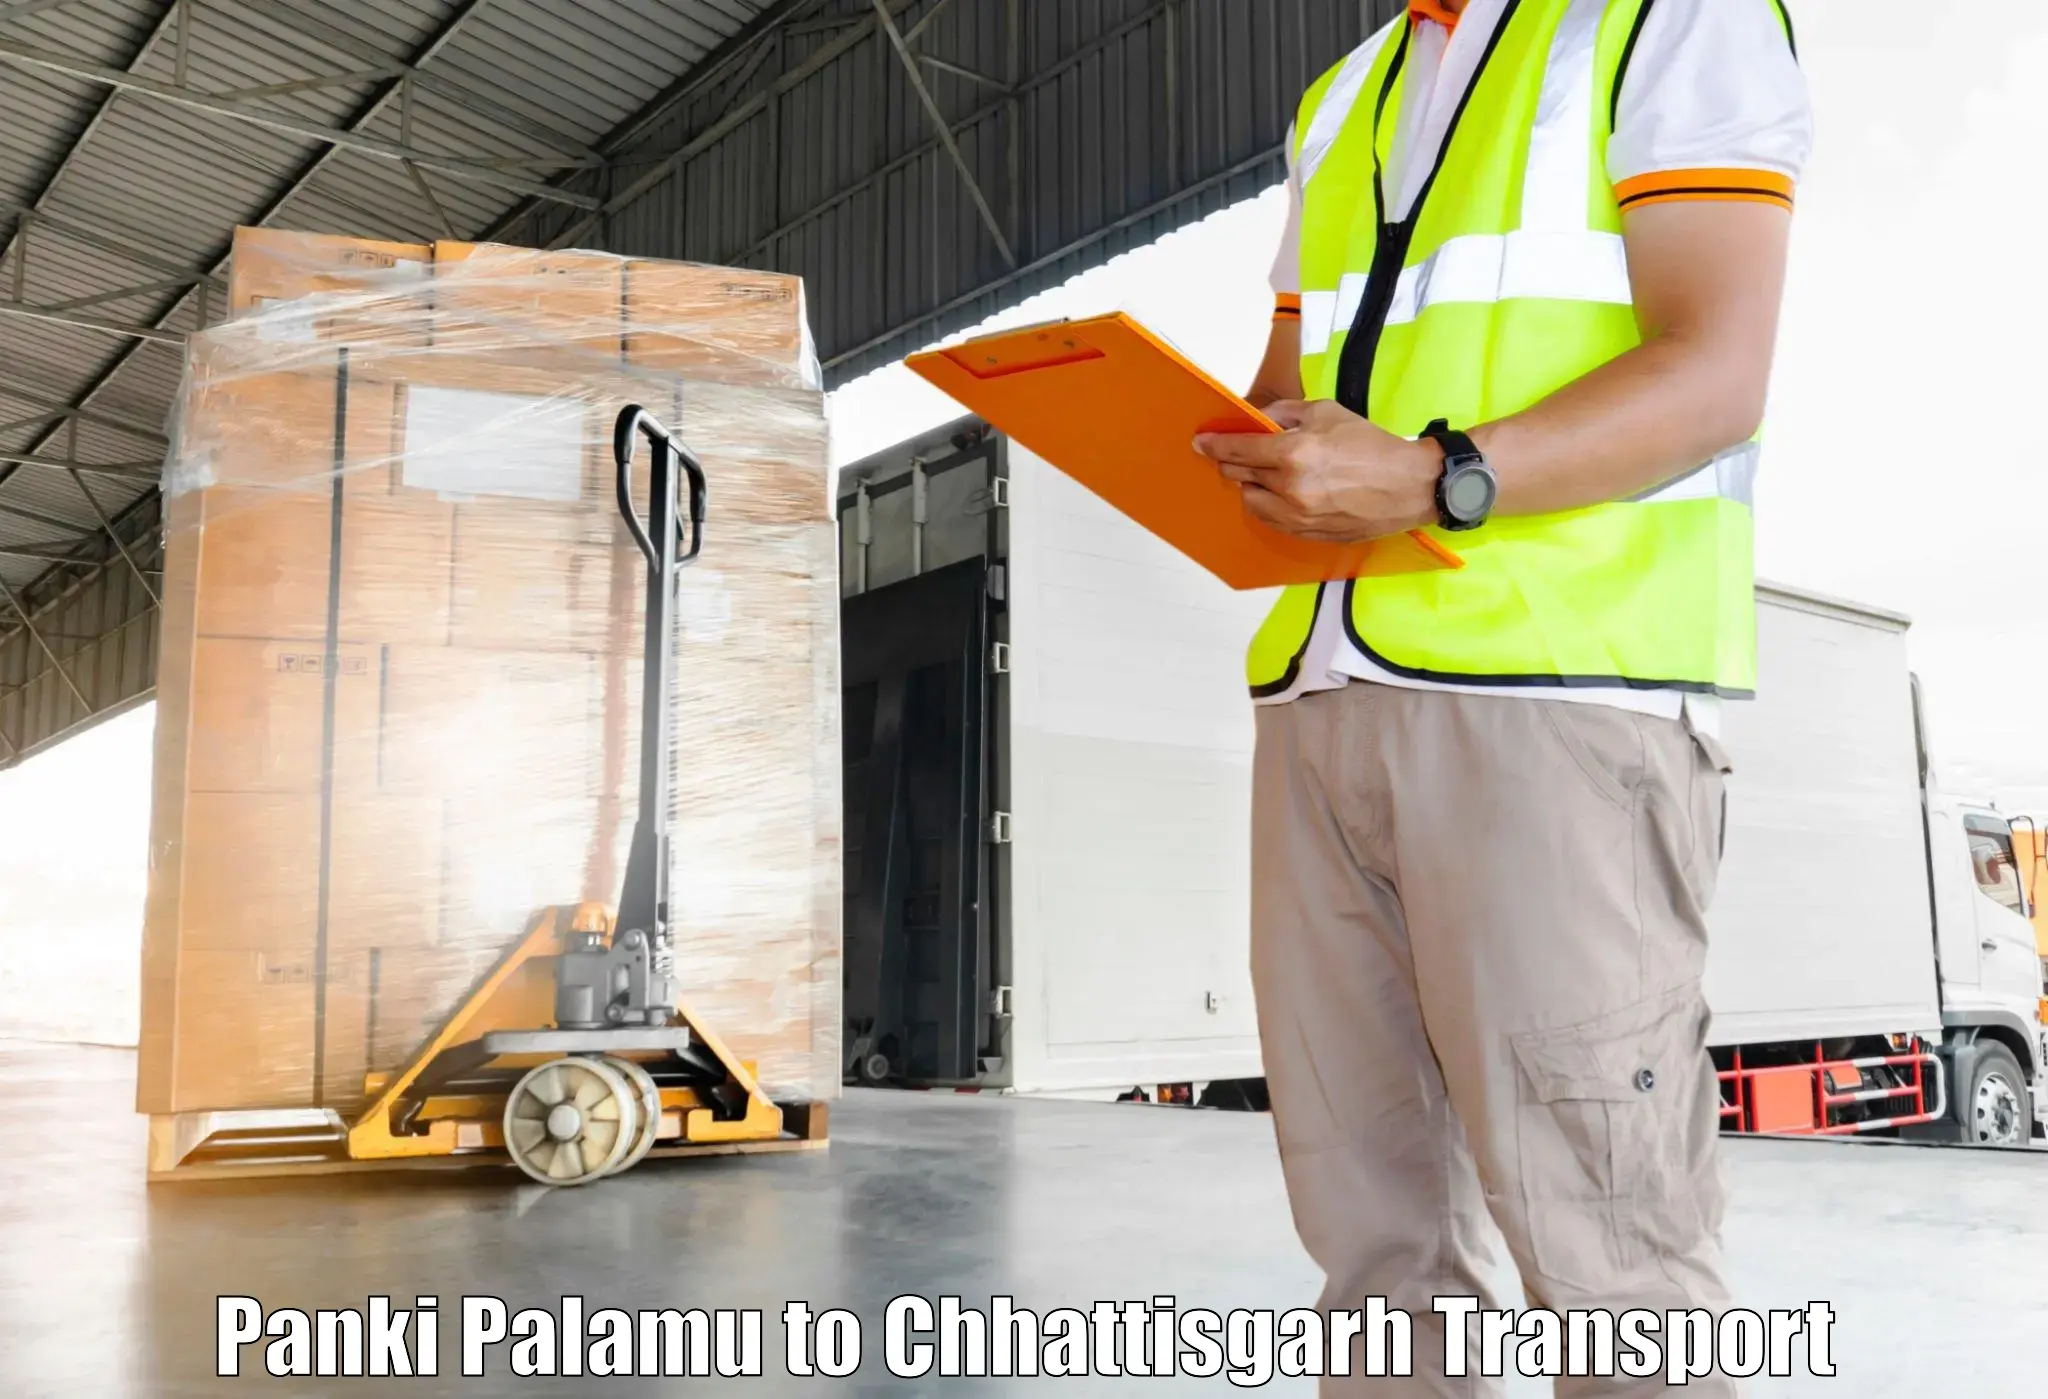 Part load transport service in India Panki Palamu to Mahasamund